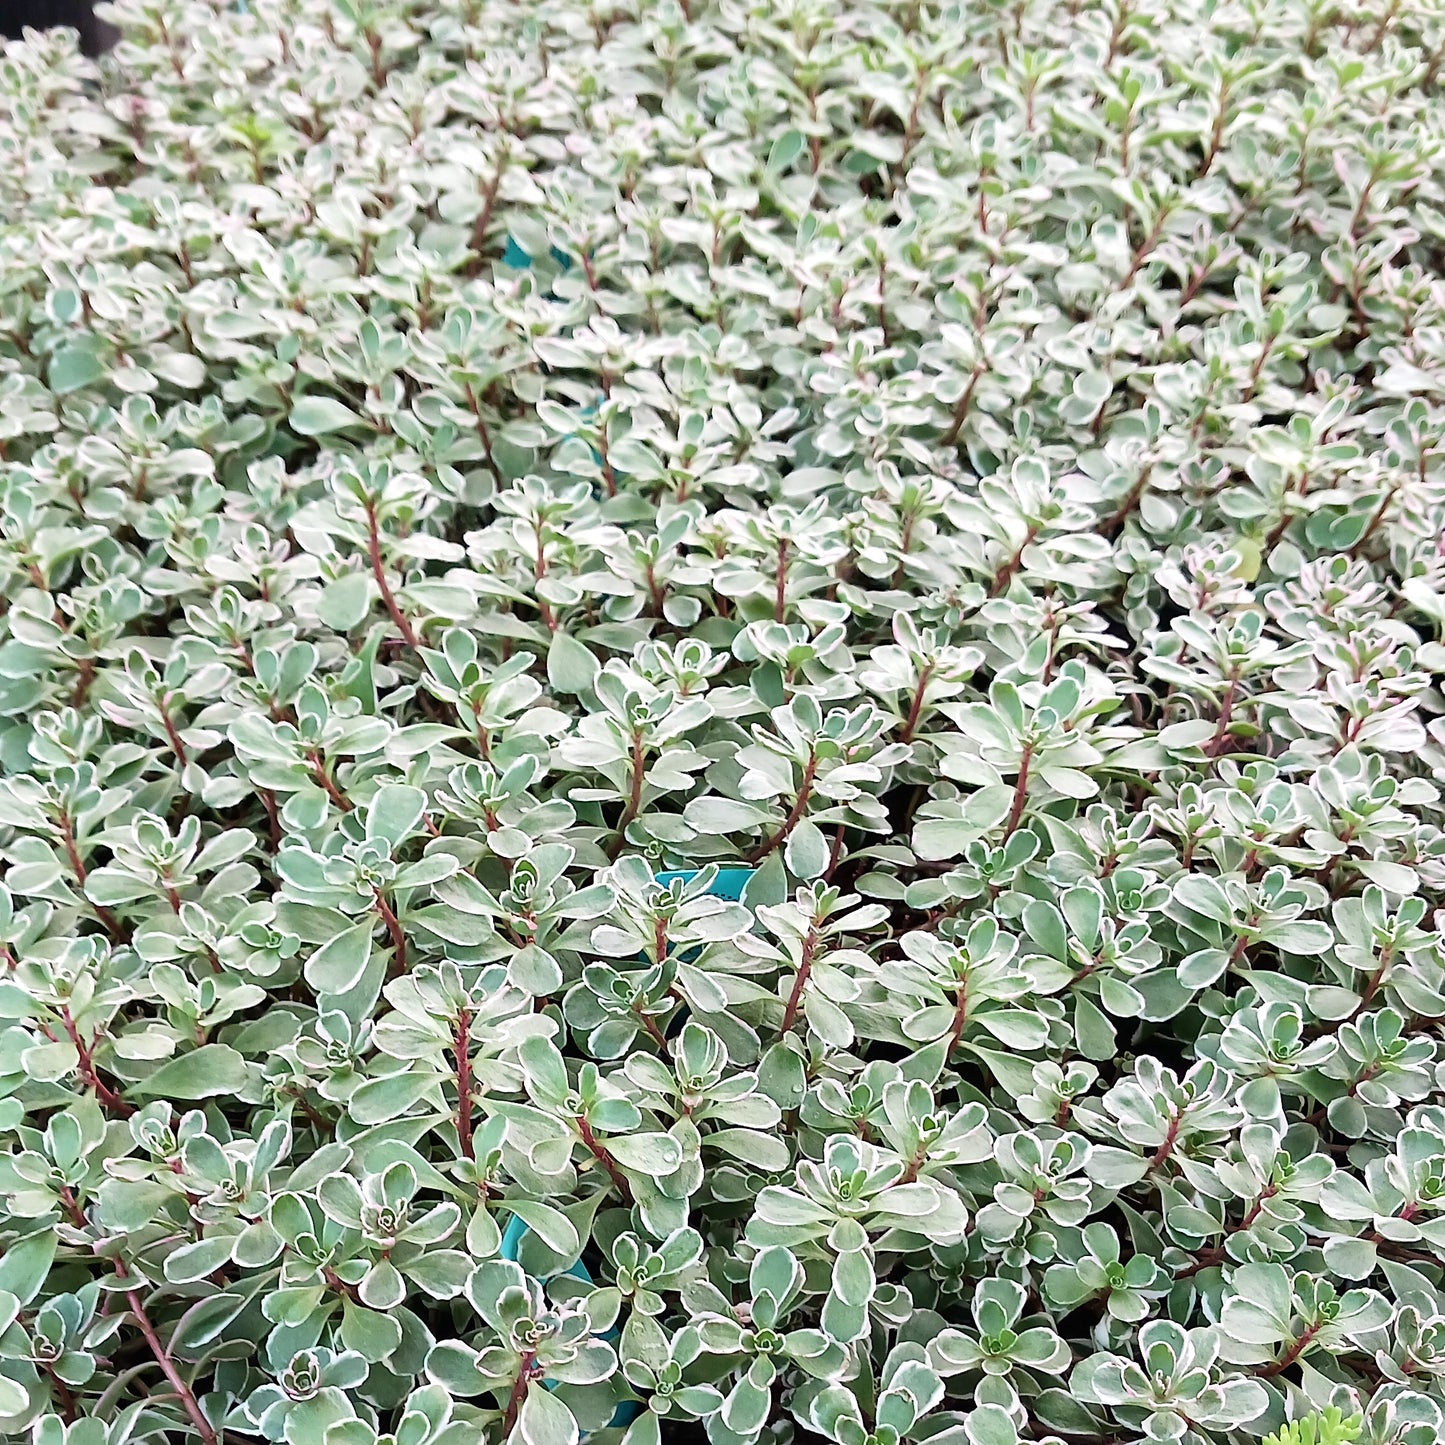 Sedum spurium "Tricolor" - 4in